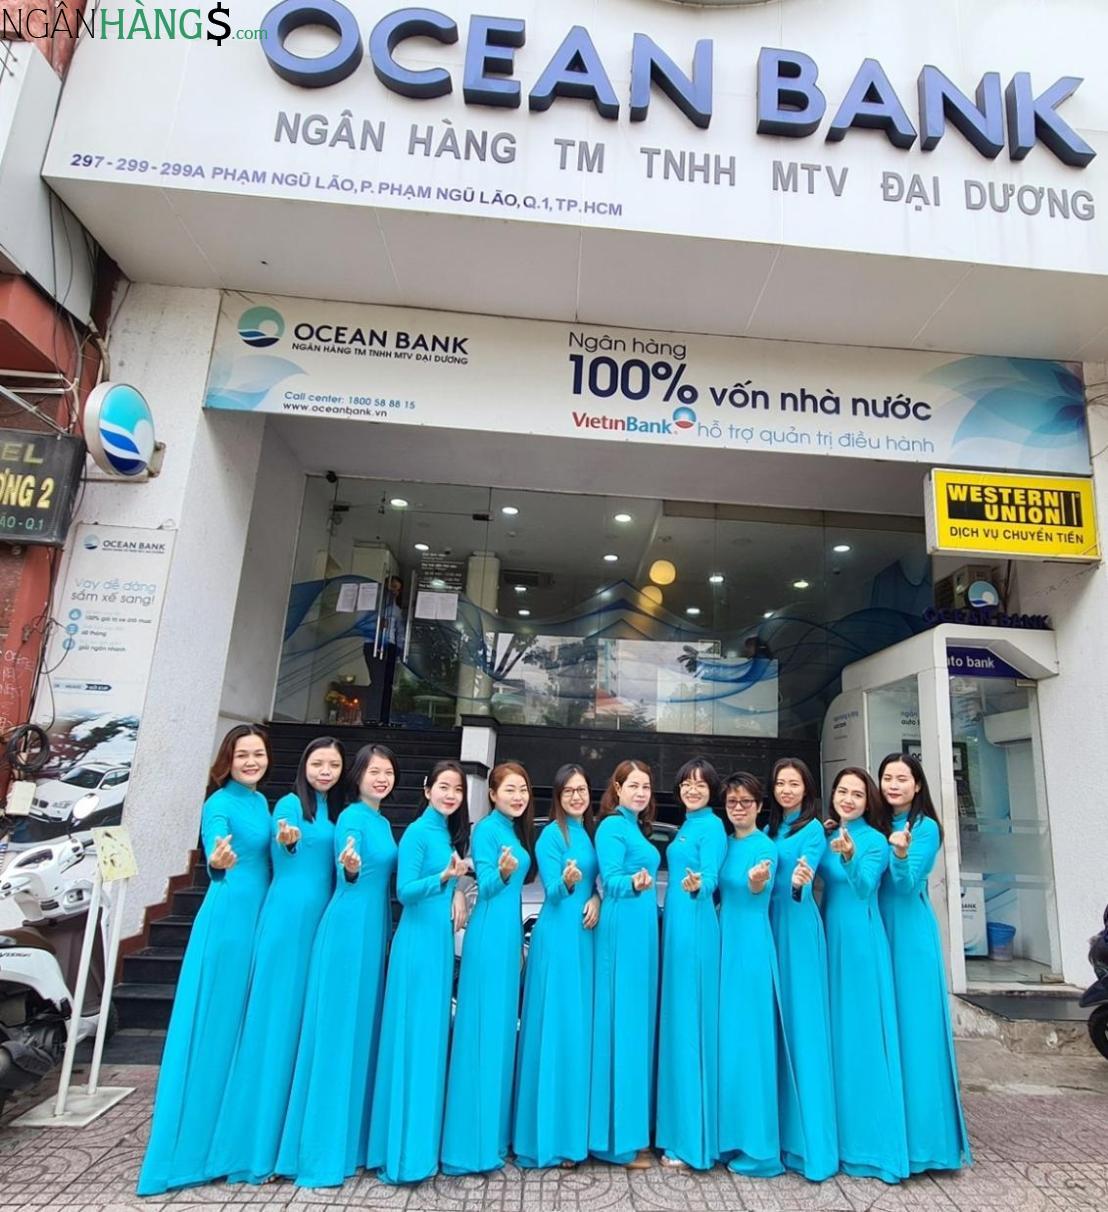 Ảnh Cây ATM ngân hàng Đại Dương Oceanbank Cty Sao Hôm Nha Trang 1